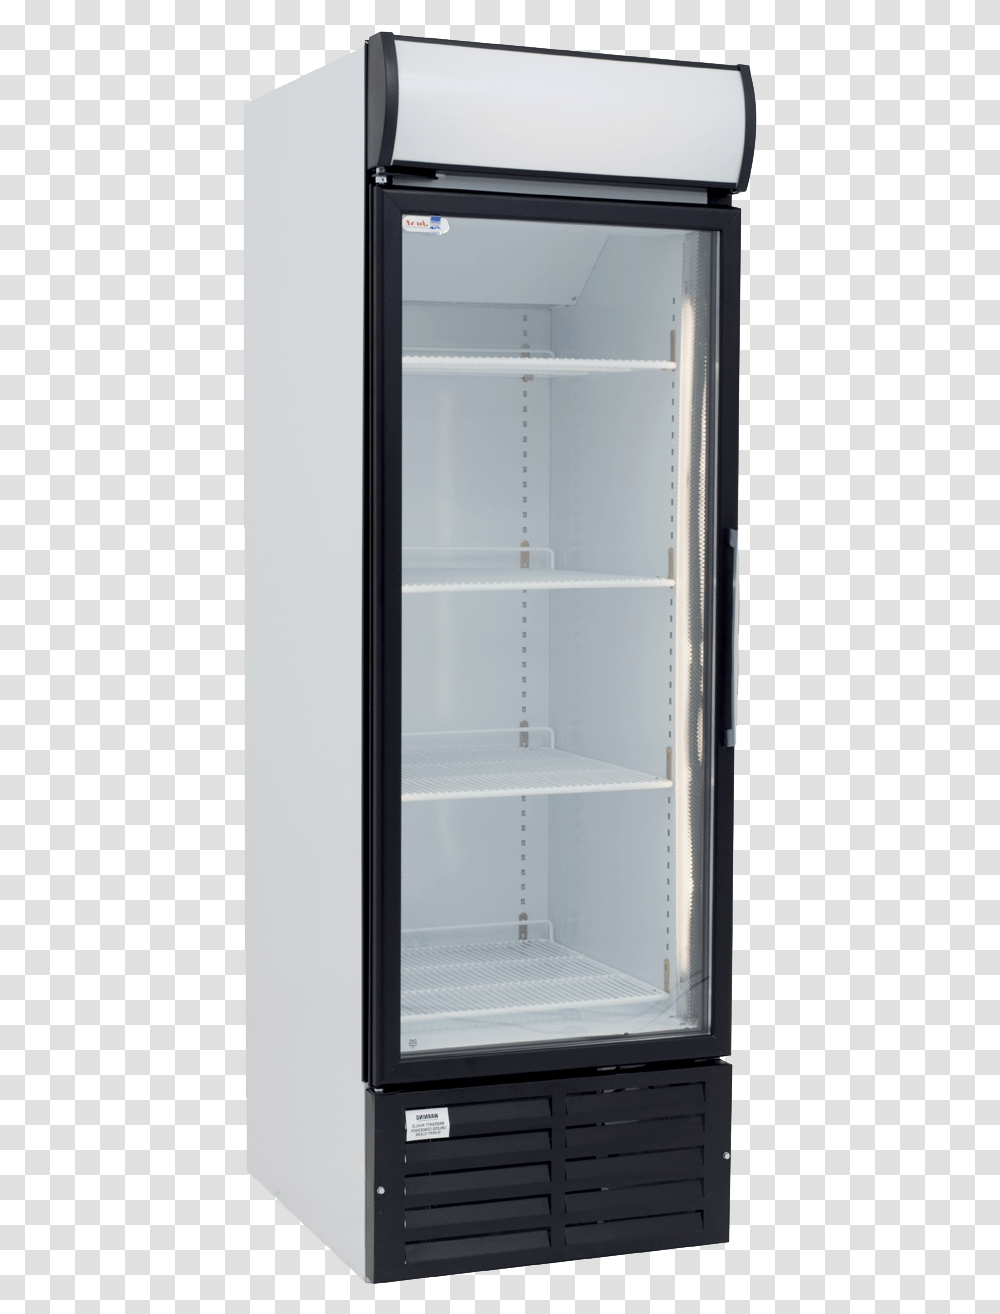 Display Case Shelf, Appliance, Refrigerator, Furniture Transparent Png